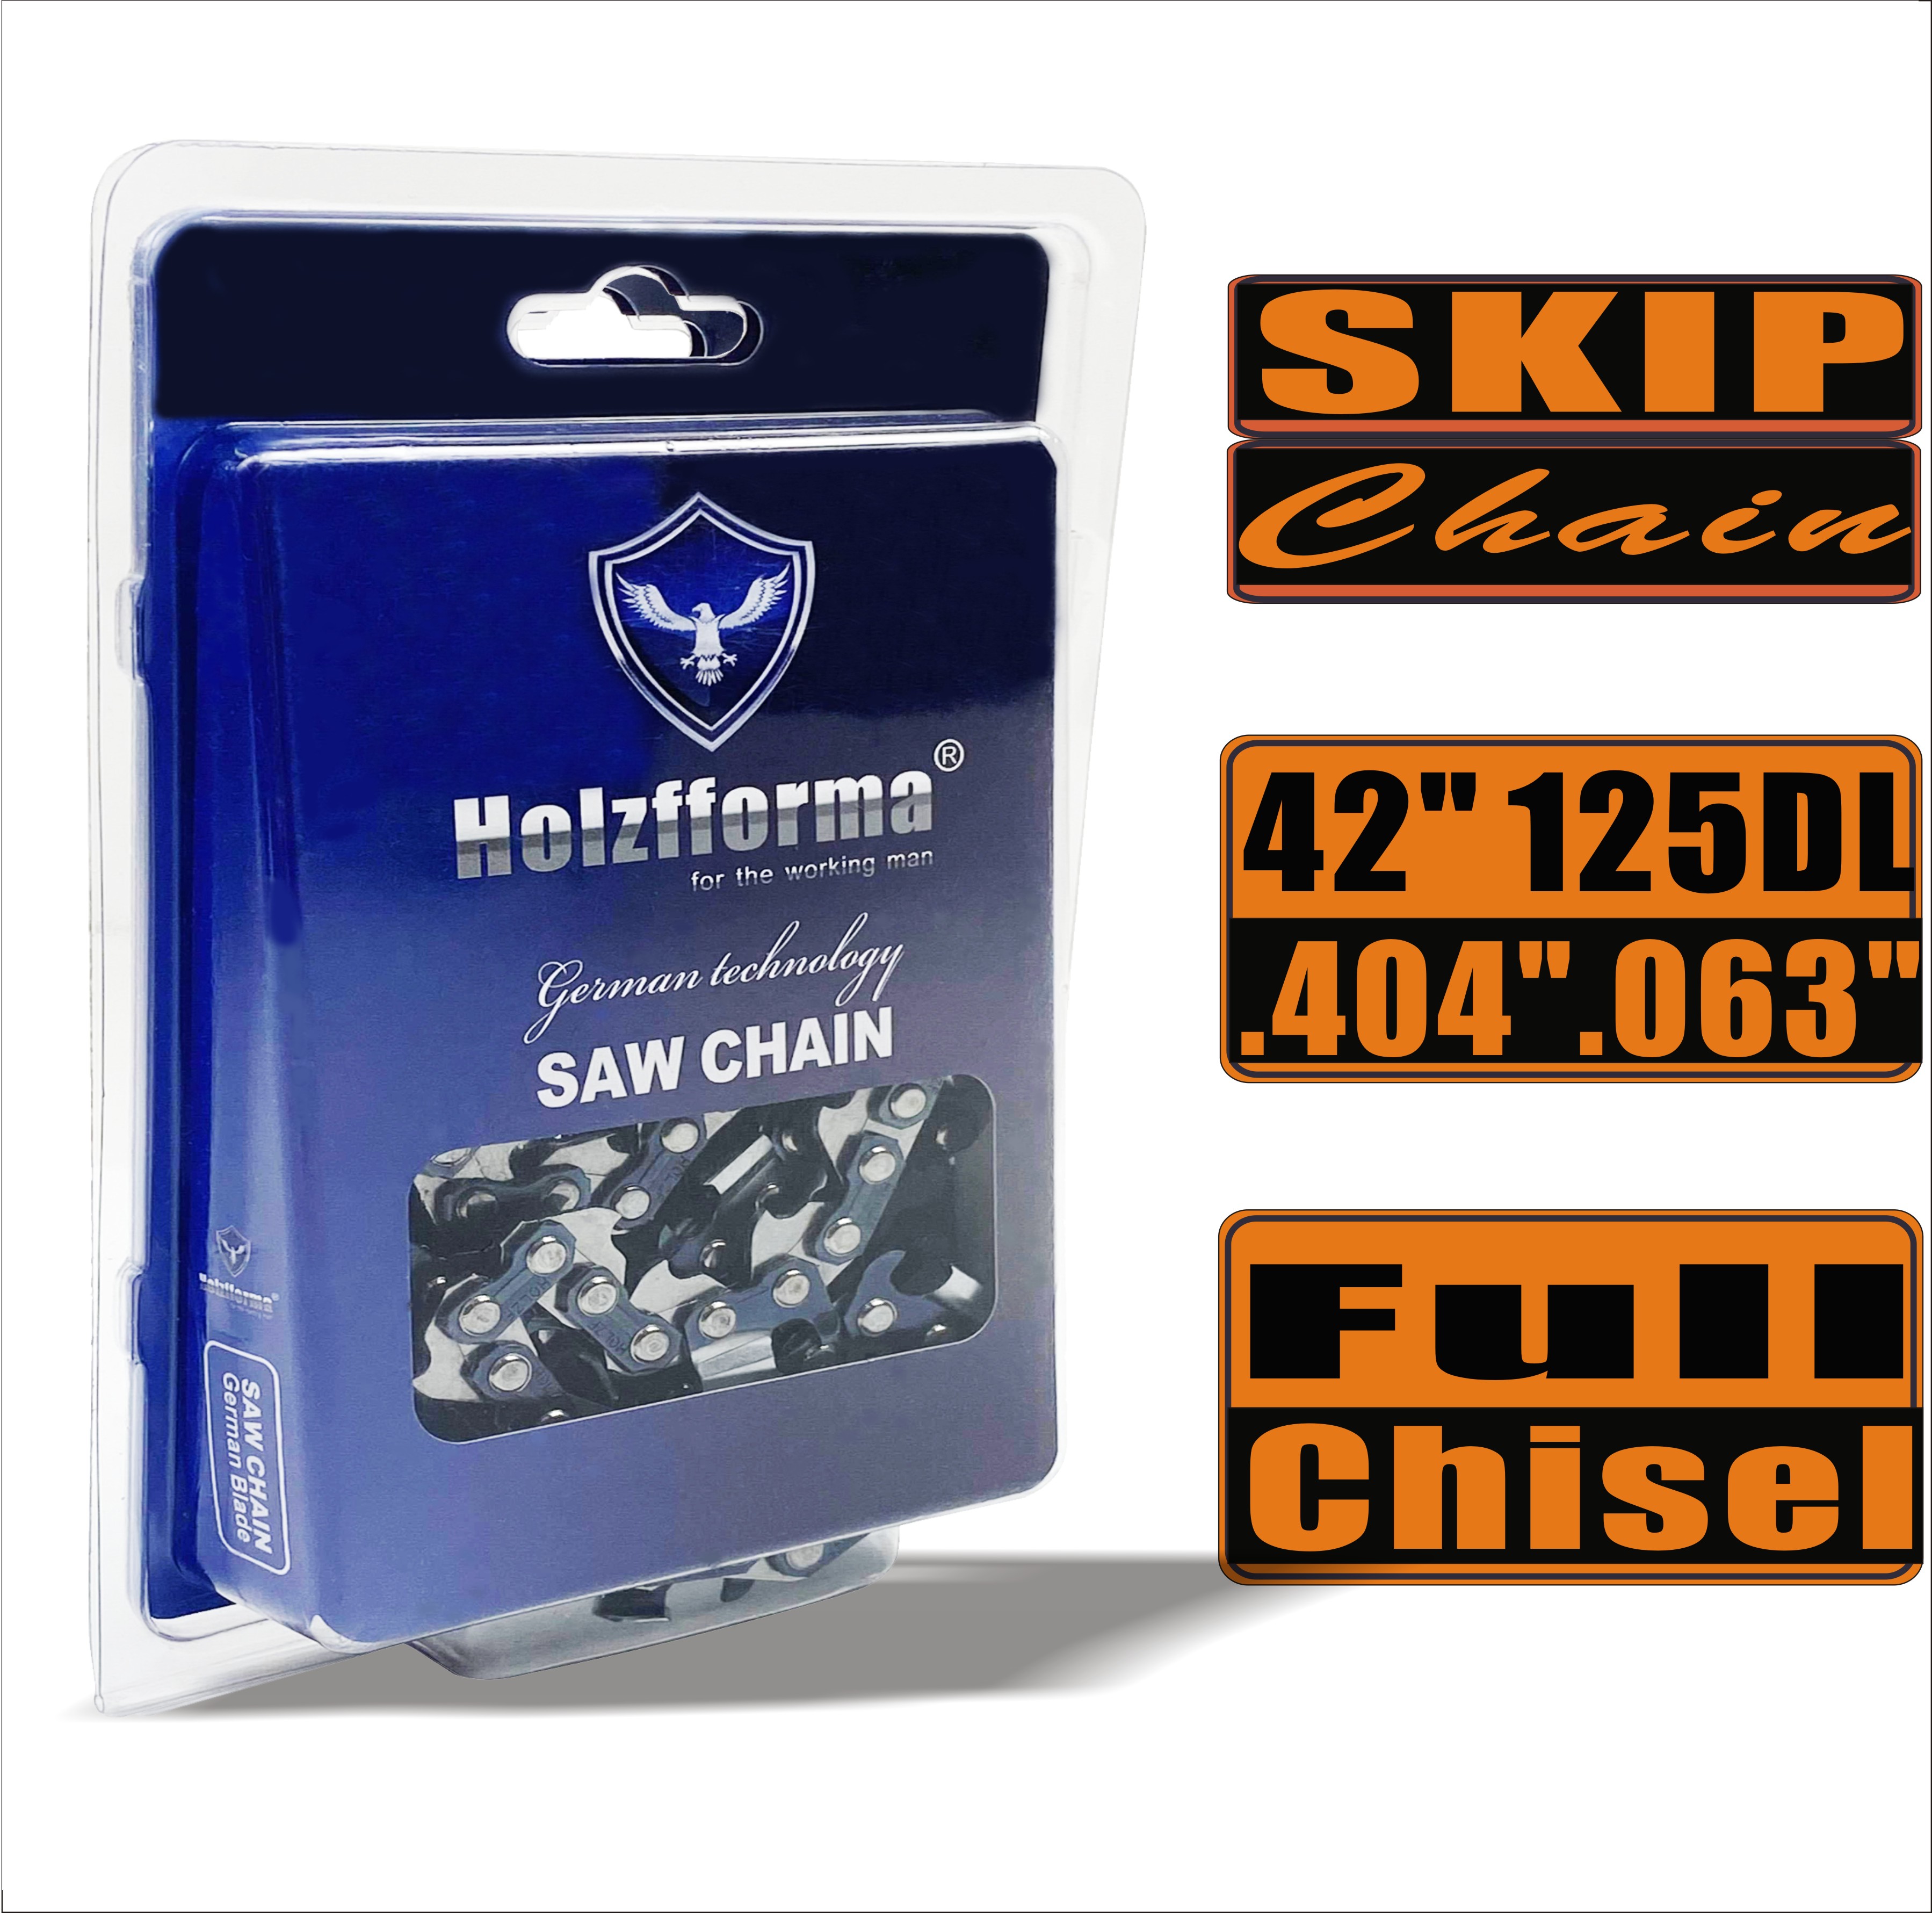 Holzfforma® Skip Chain Full Chisel .404'' .063'' 42inch 125DL цепи для Бензопилы Высококачественные немецкие лезвия и звенья